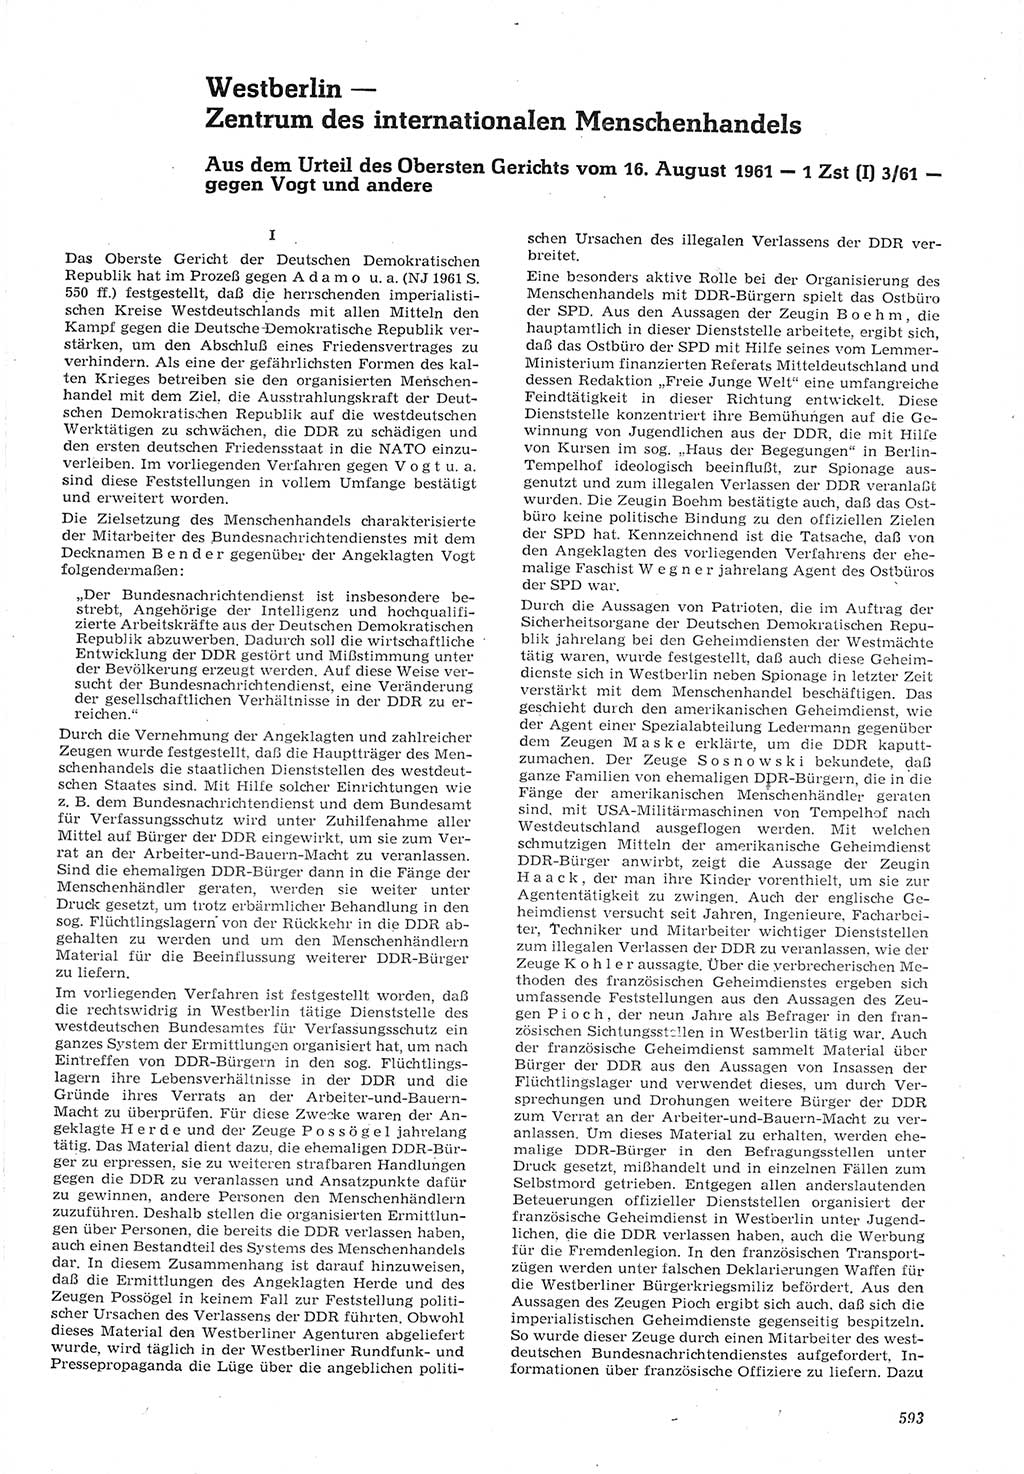 Neue Justiz (NJ), Zeitschrift für Recht und Rechtswissenschaft [Deutsche Demokratische Republik (DDR)], 15. Jahrgang 1961, Seite 593 (NJ DDR 1961, S. 593)